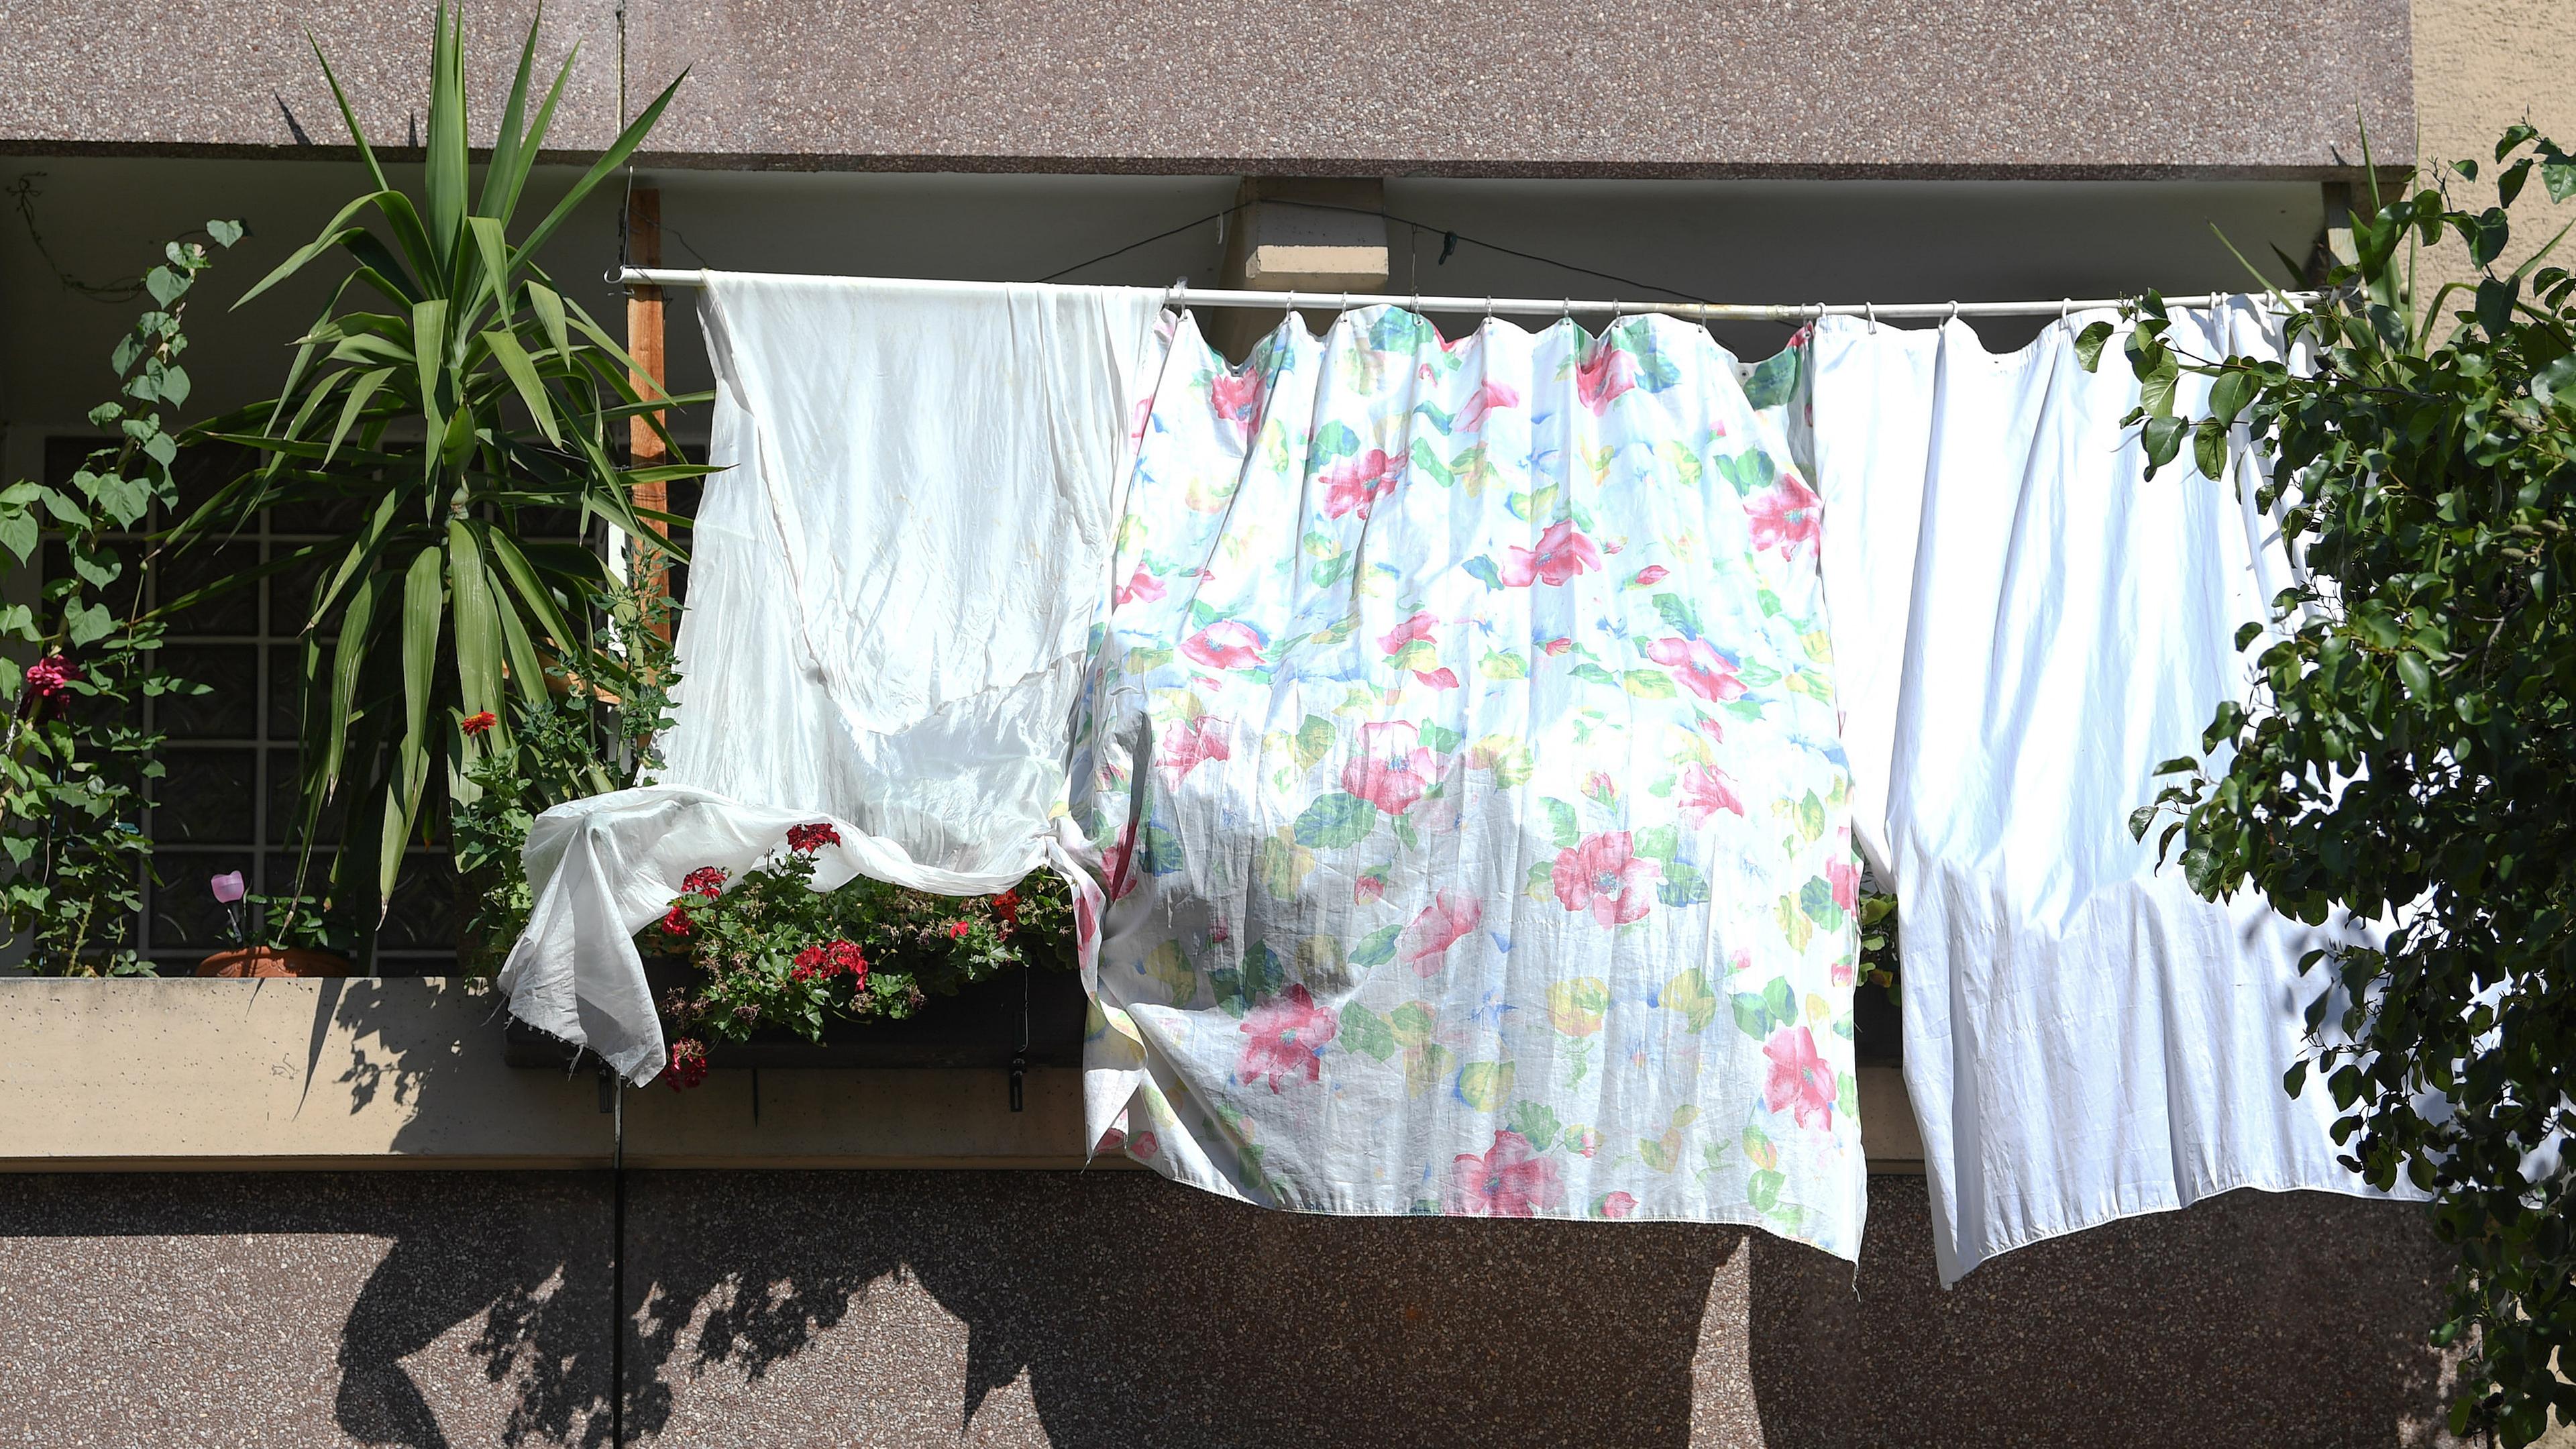 Mit Tüchern schützen Bewohner ihre Wohnung vor der heissen Sonne